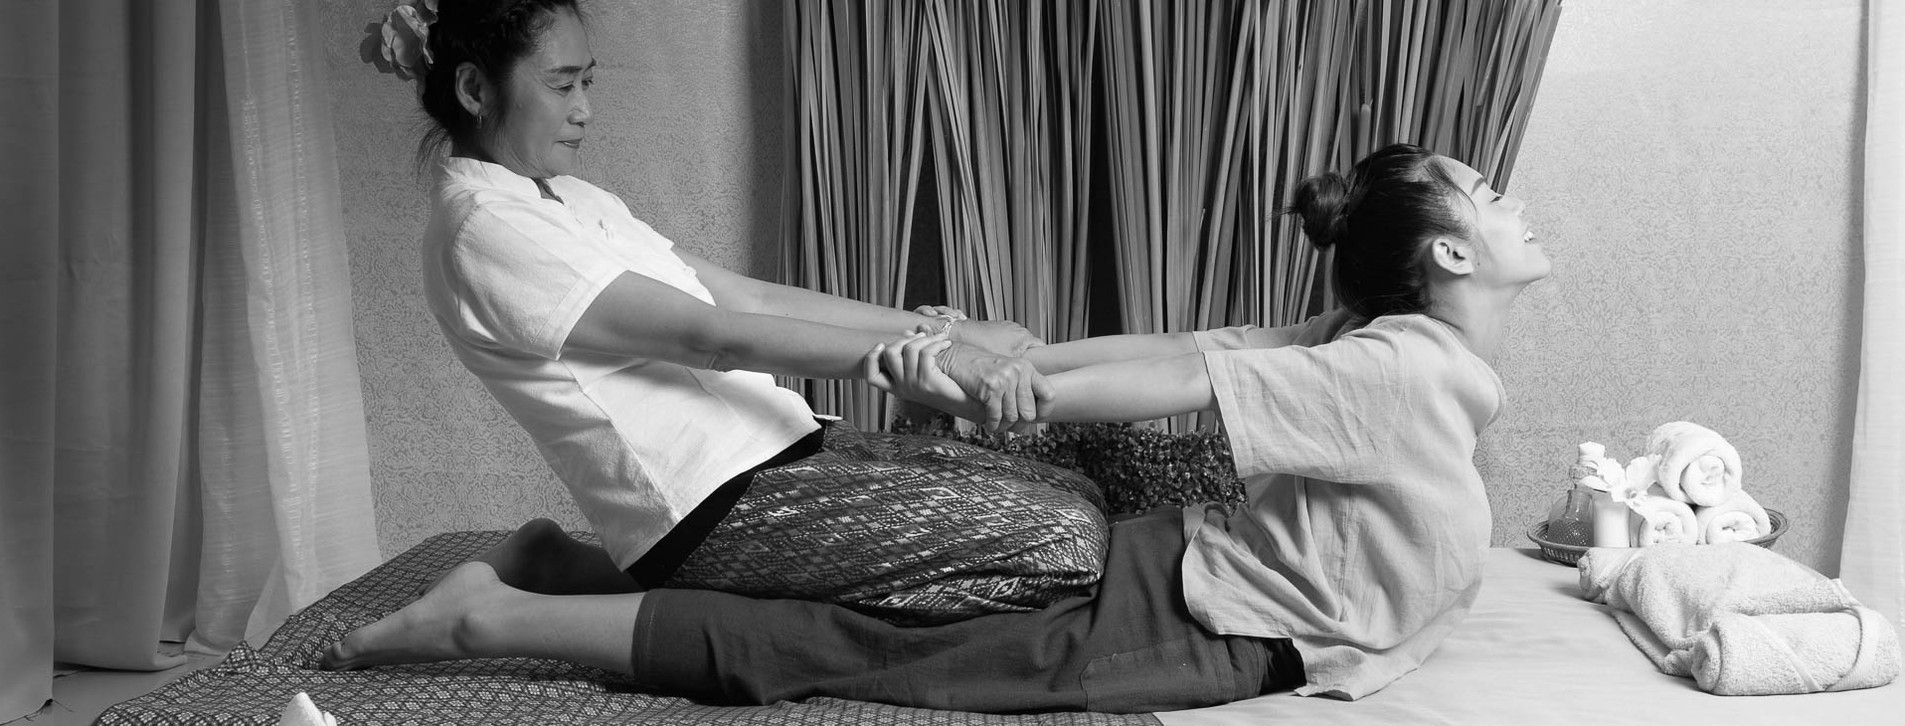 Фото 1 - Тайский массаж для двоих